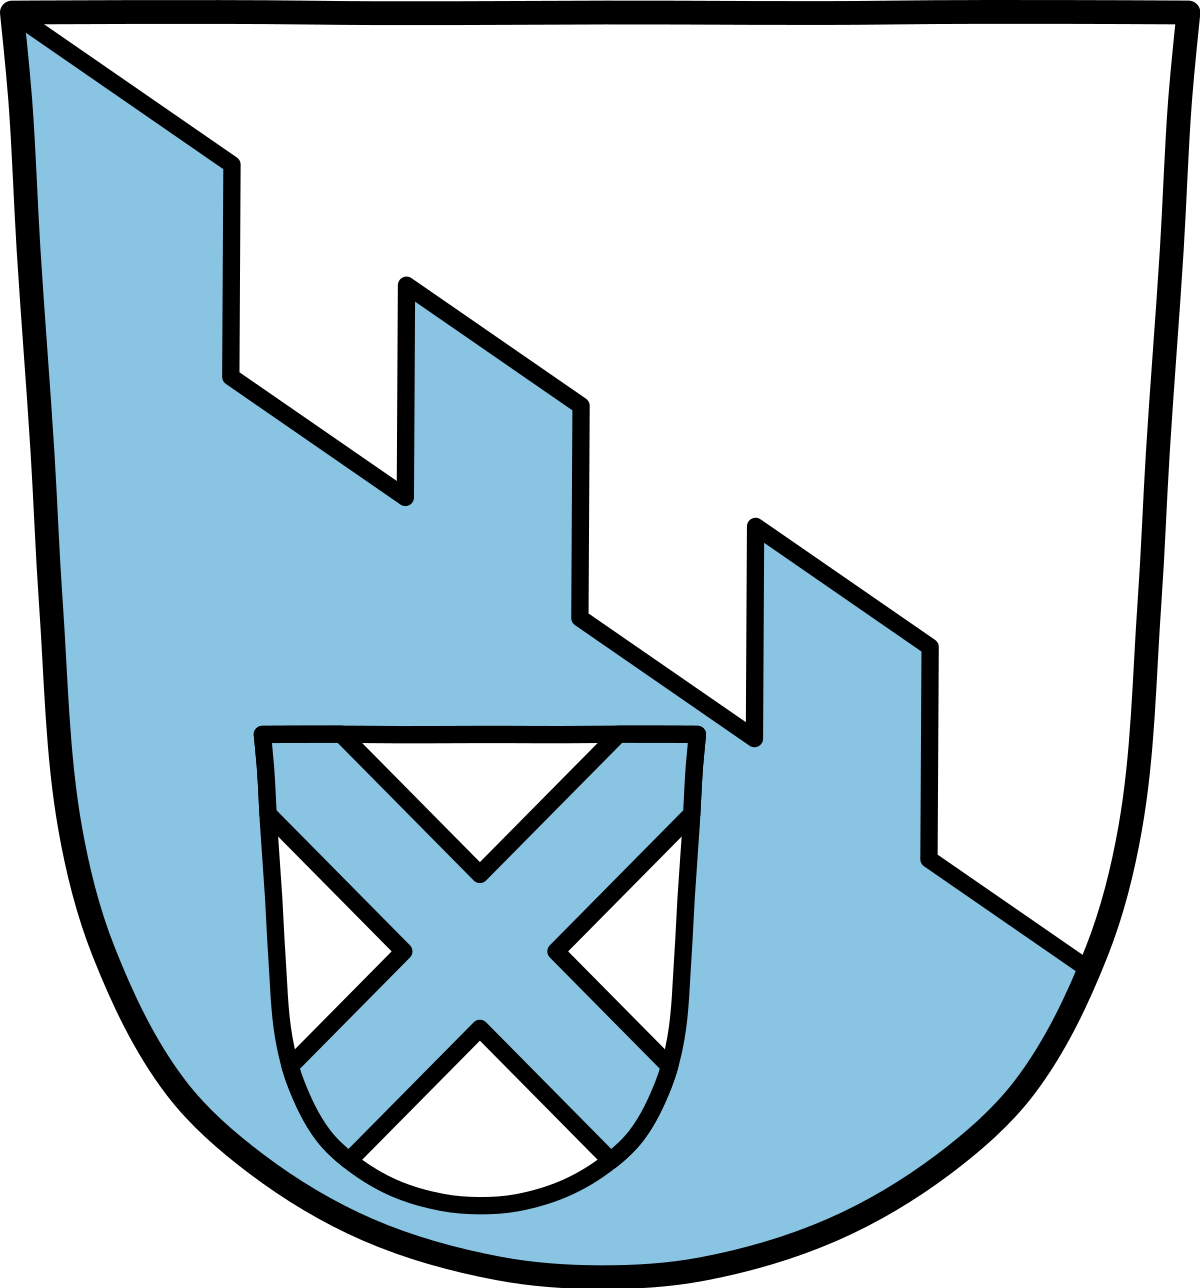 Wildenberg